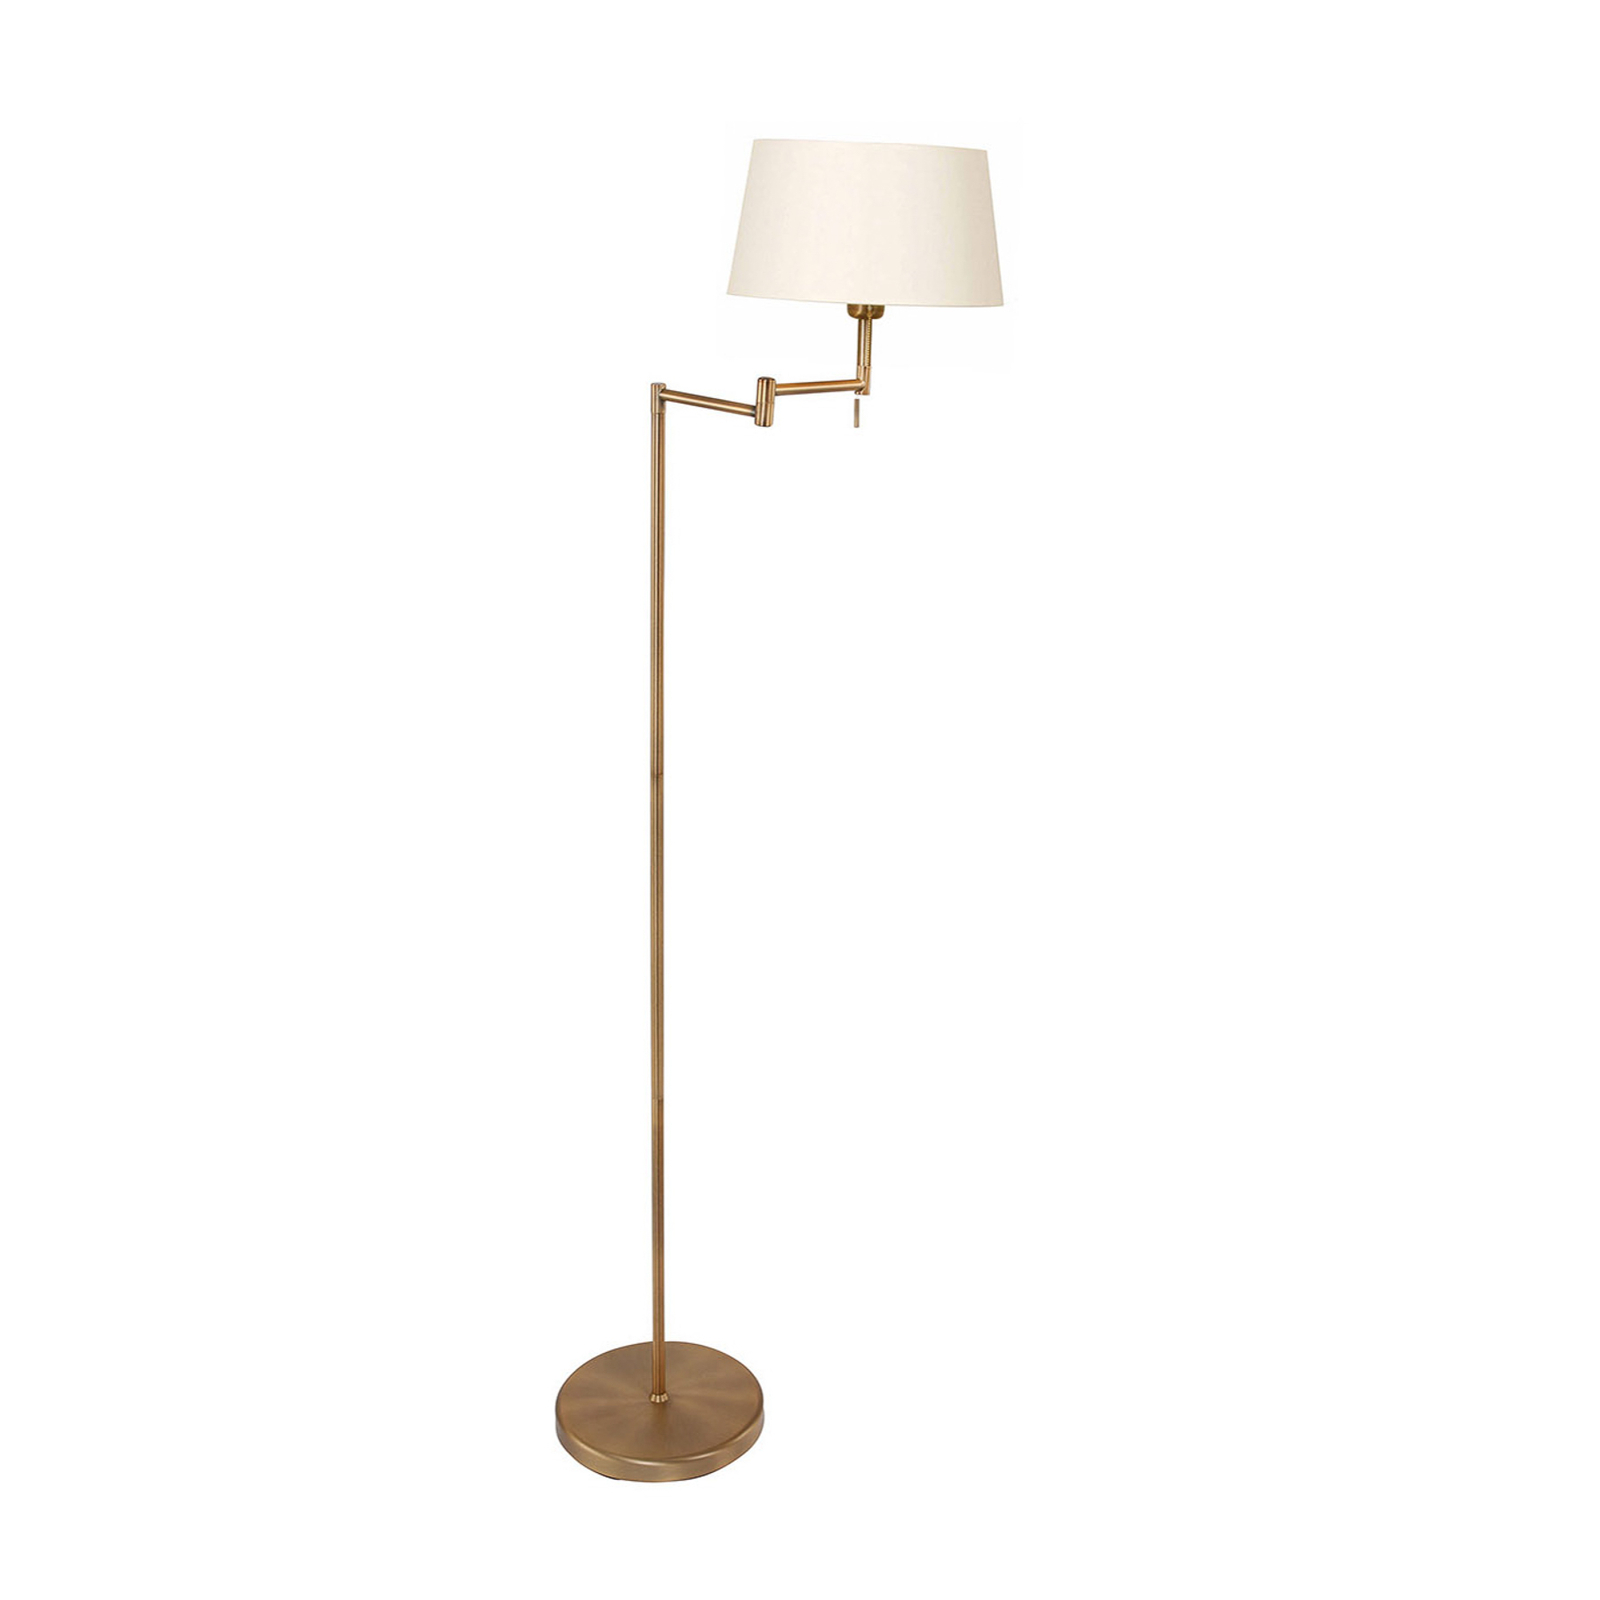 Stehlampe Bella, schwenkbar, bronze